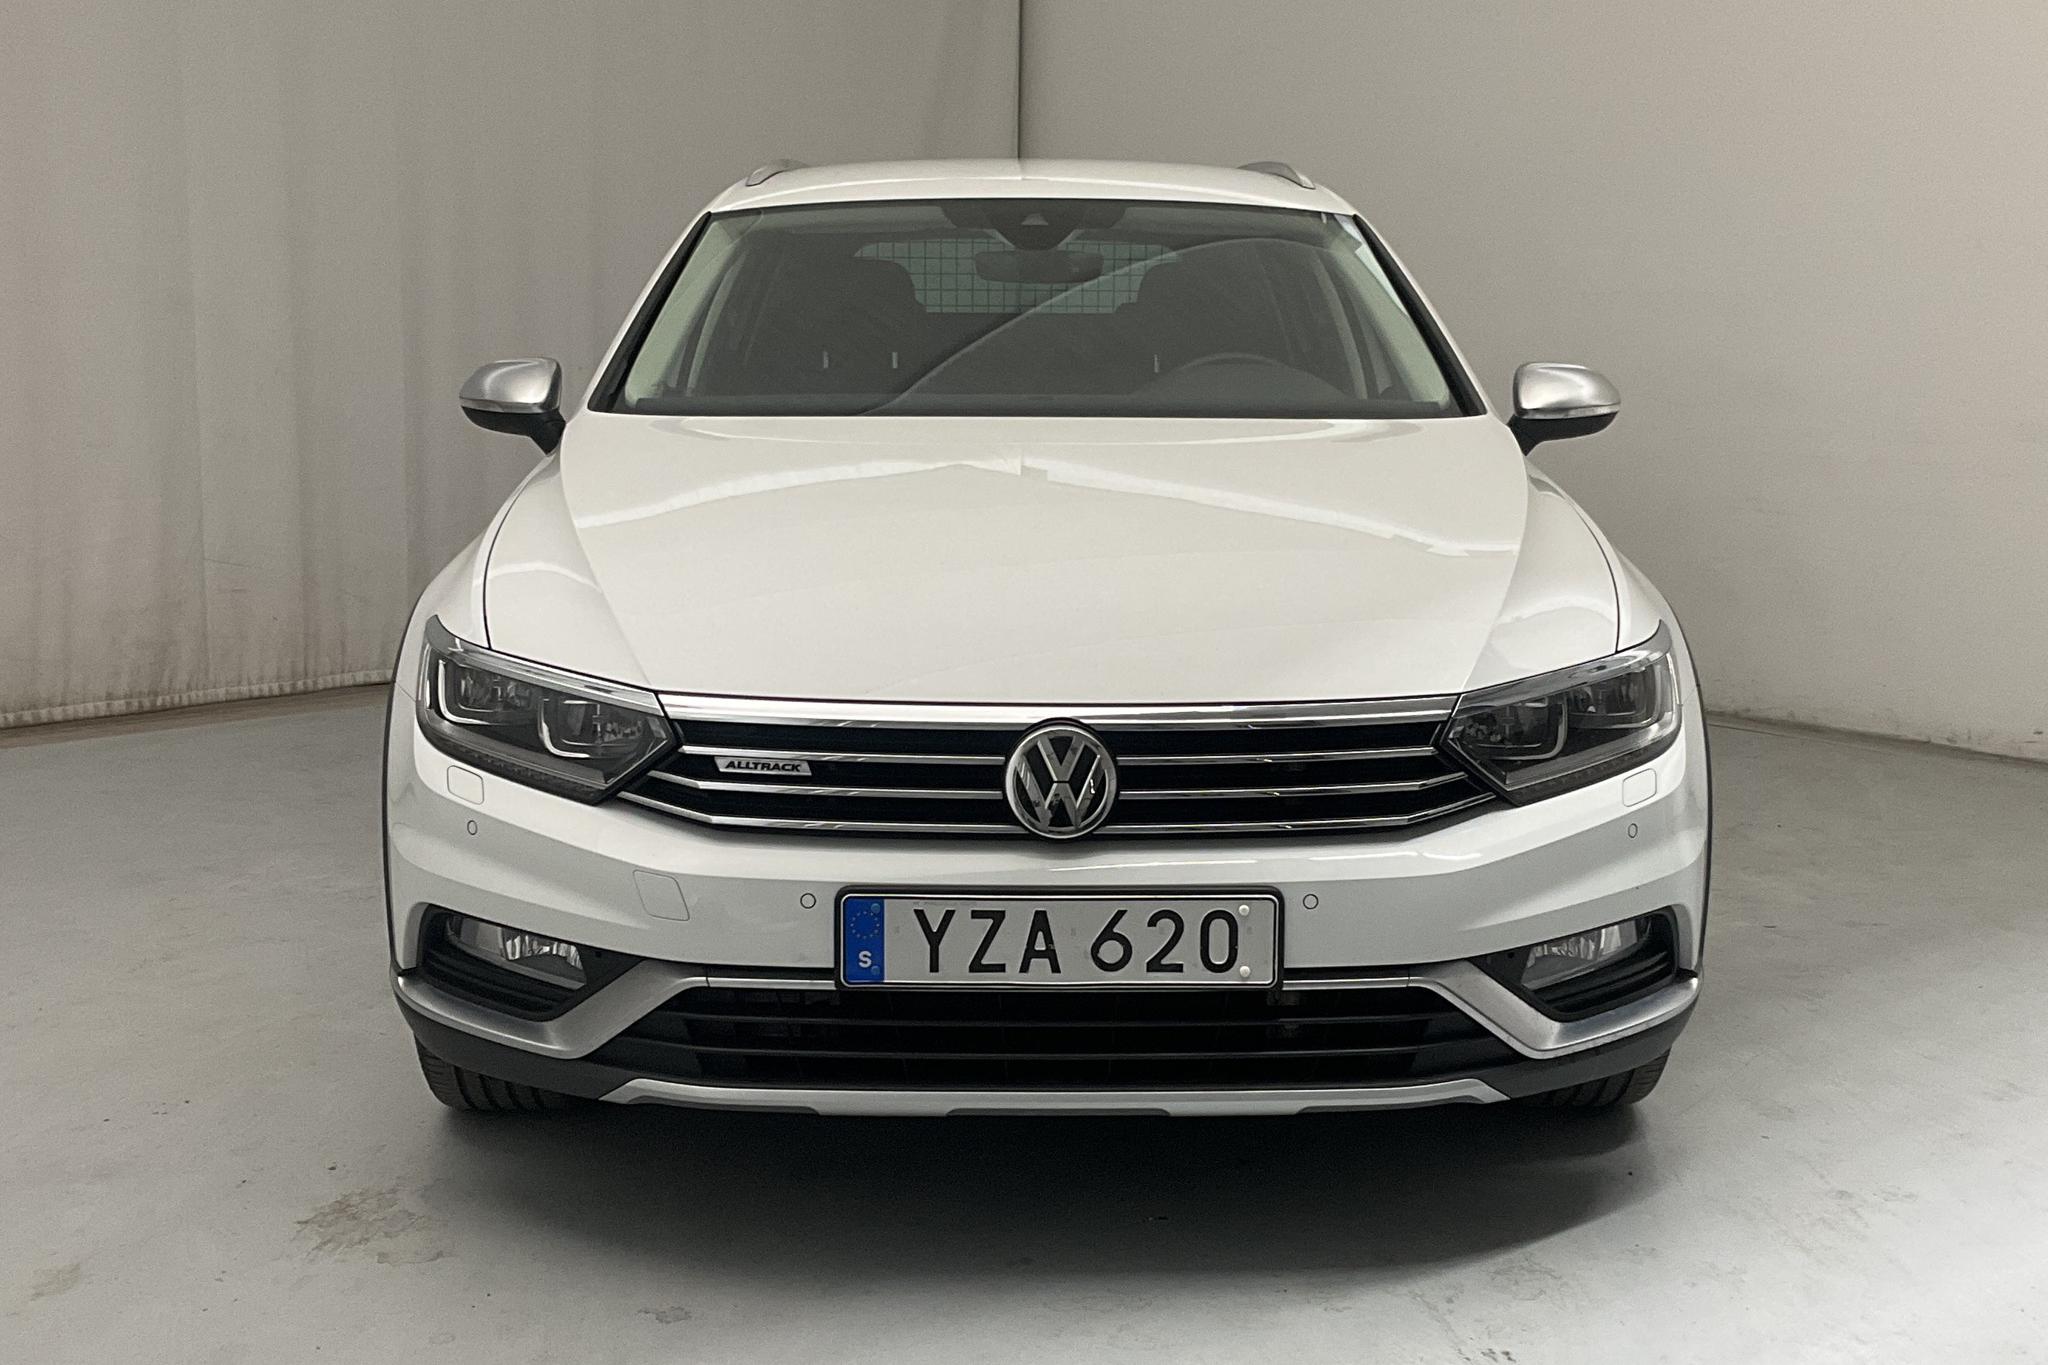 VW Passat Alltrack 2.0 TSI Sportscombi 4MOTION (220hk) - 45 040 km - Automatic - white - 2018